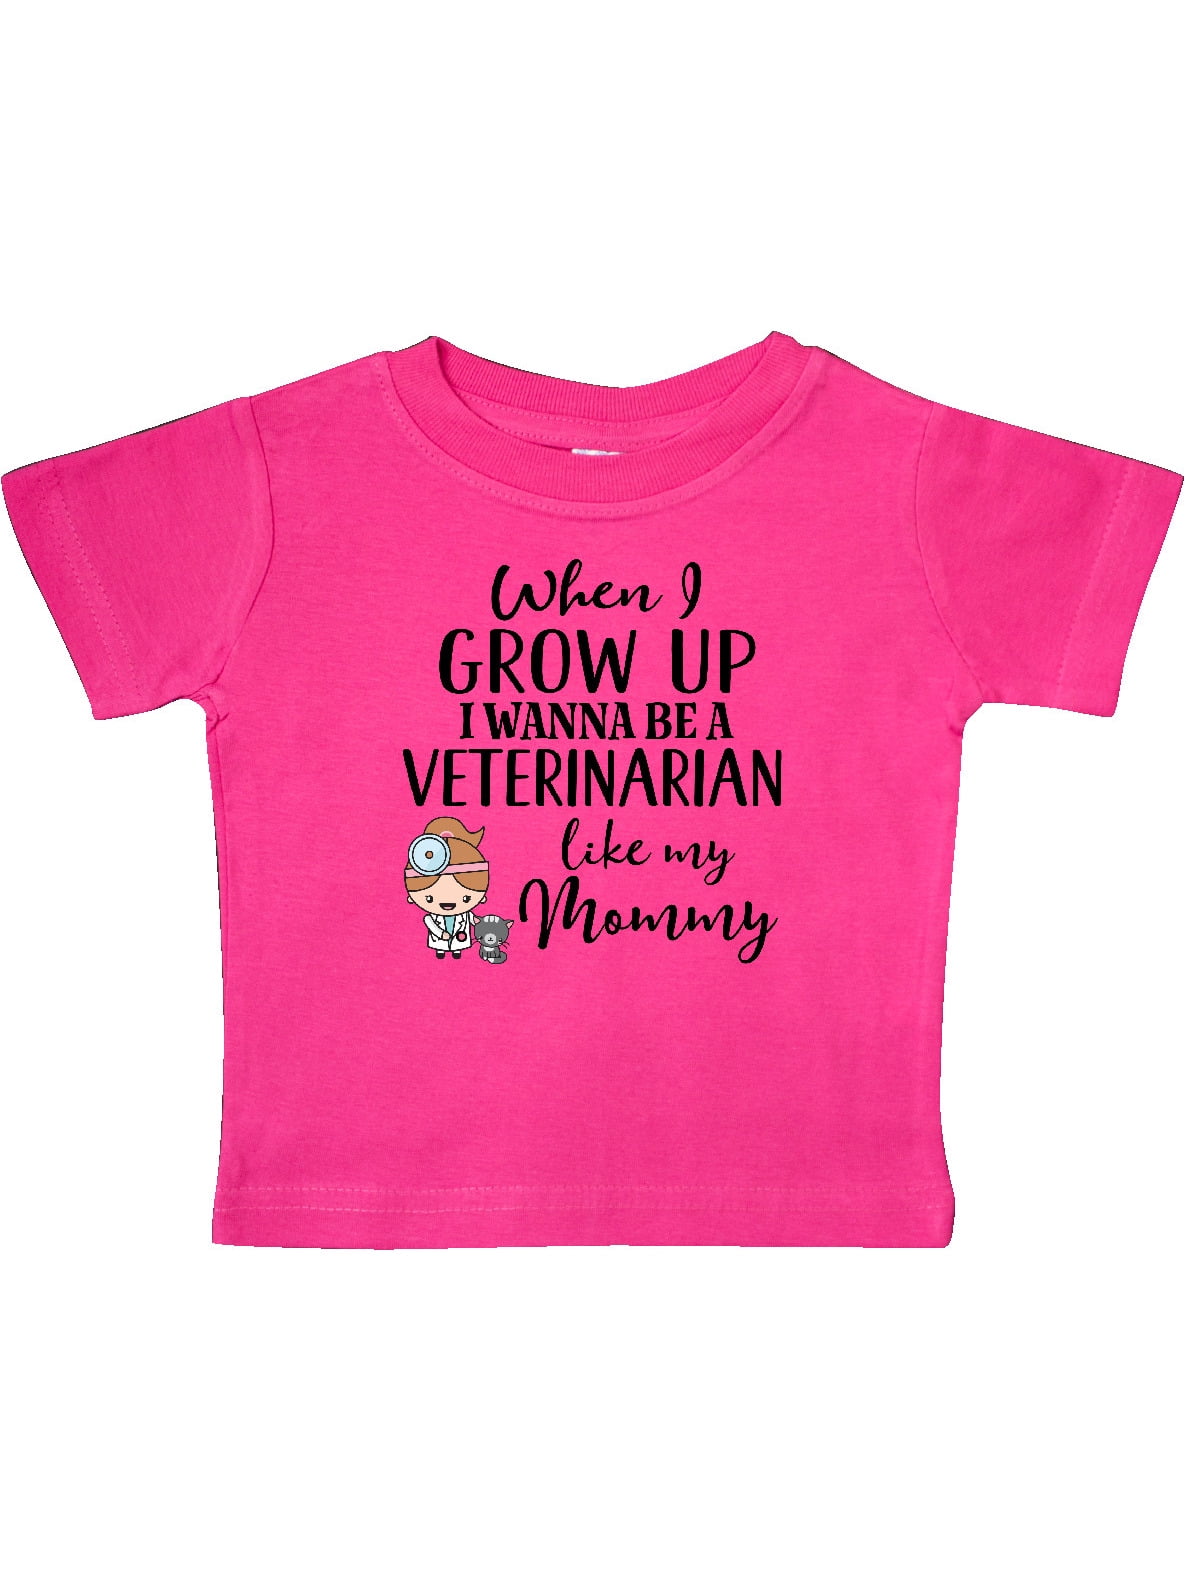 Vet Tech Shirt  Veterinary Technician Mom Gift  Gift for Mom from Daughter  Vet Tech Mom TShirt  Vet Technician Apparel  Favorite